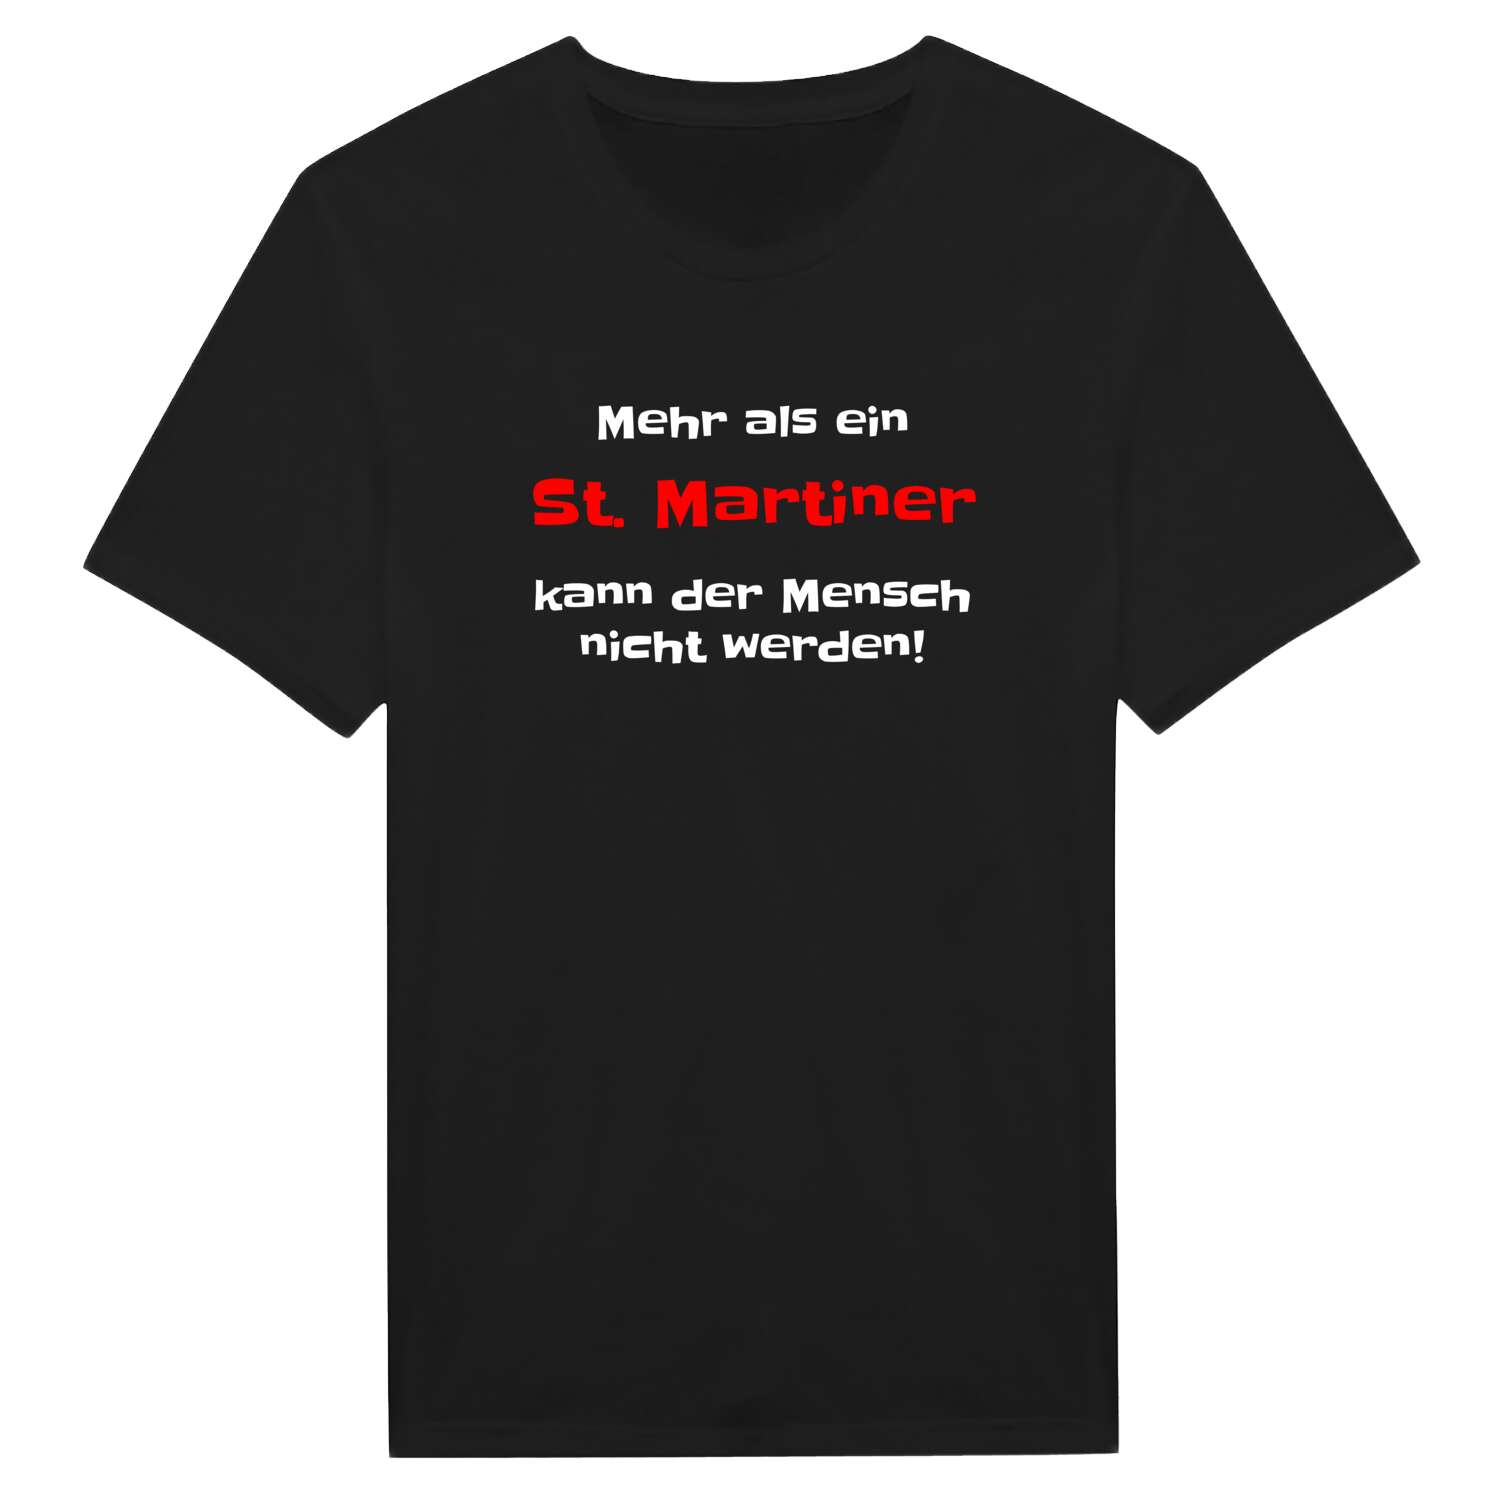 St. Martin T-Shirt »Mehr als ein«